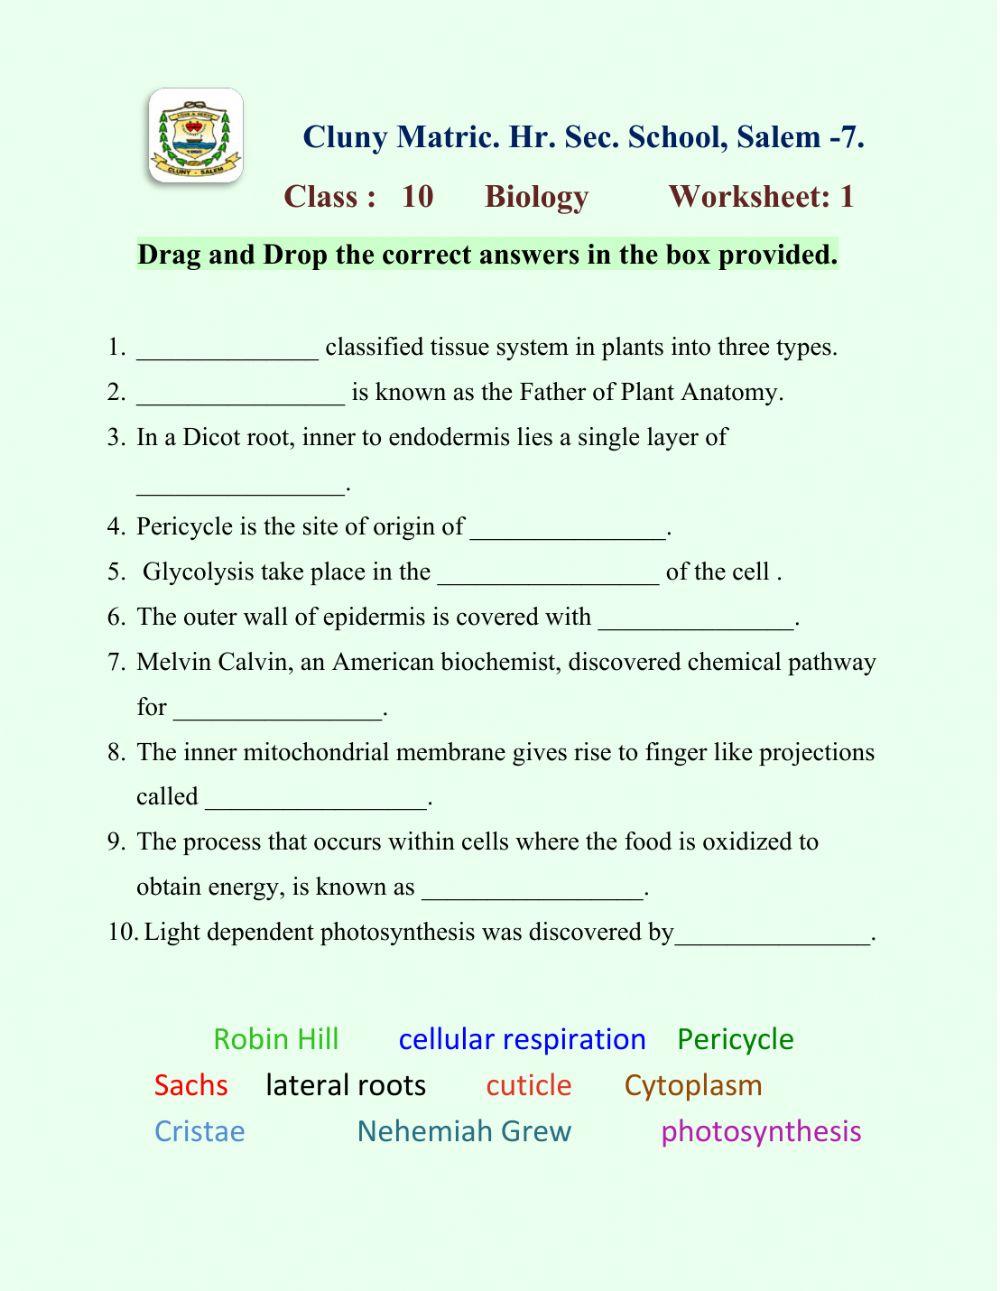 Class 10 Biology 1